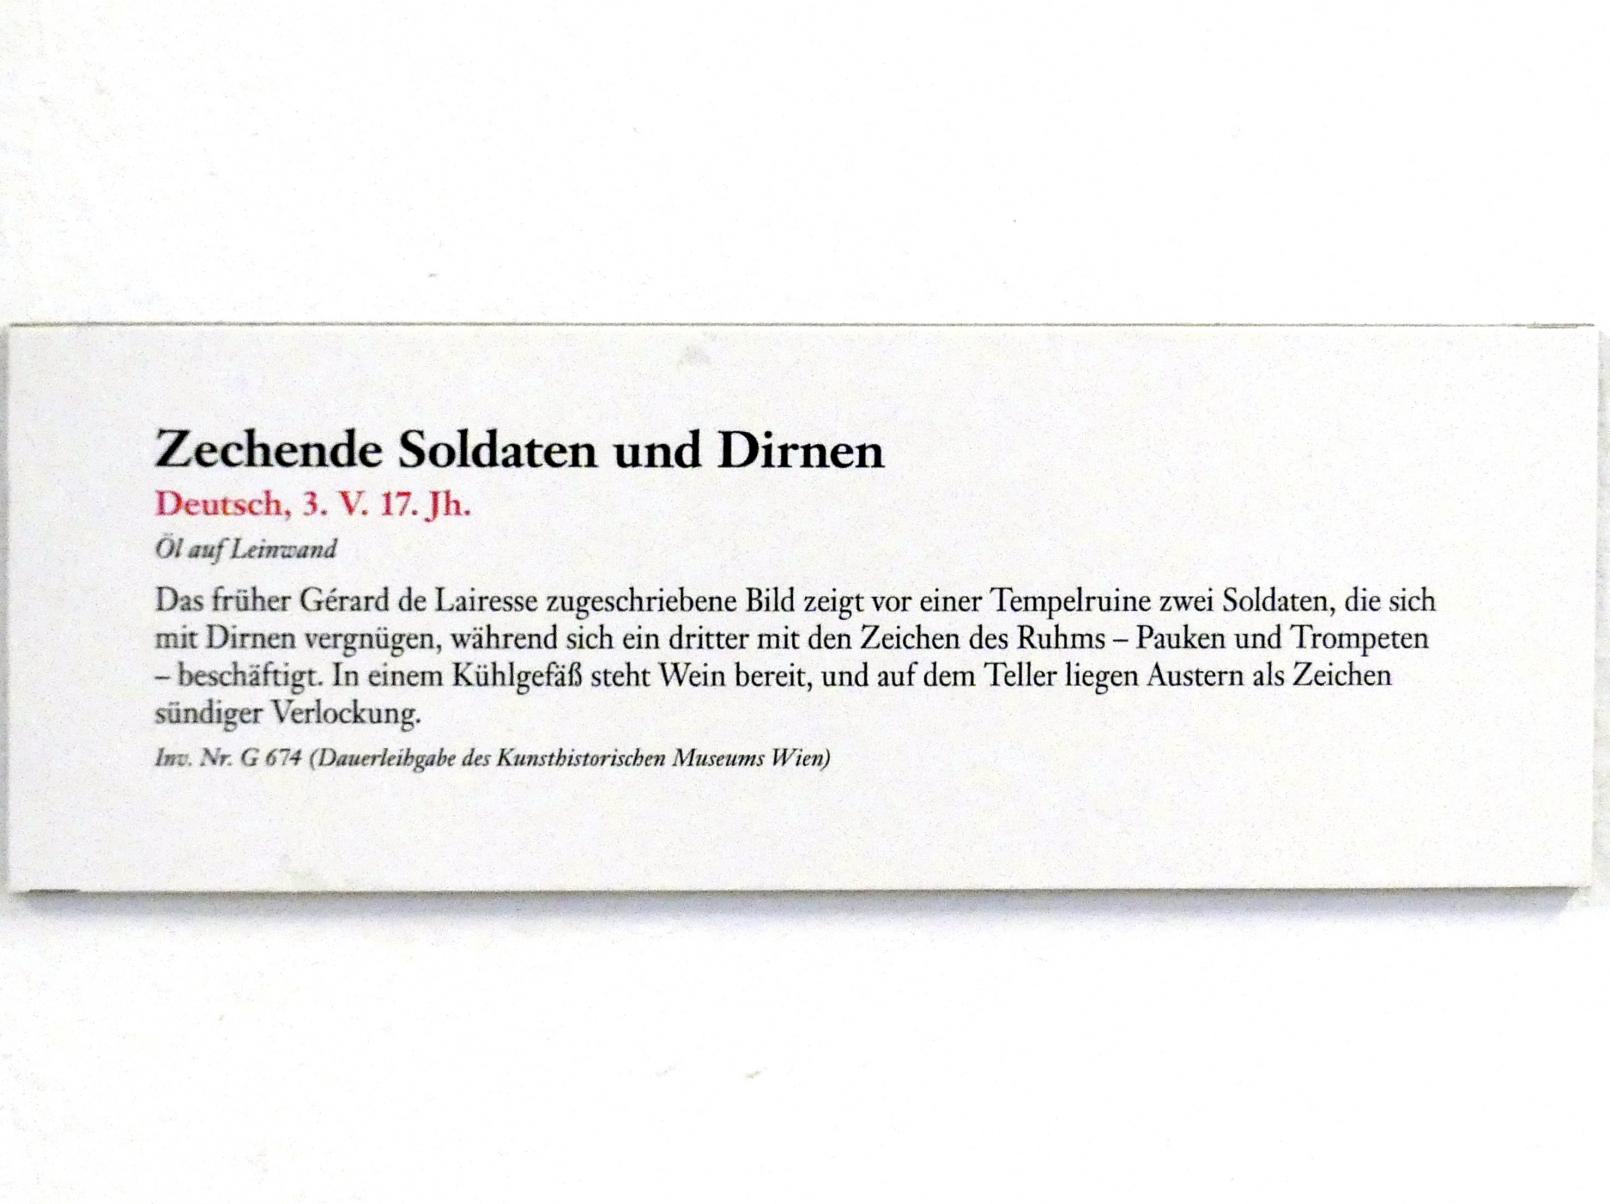 Zechende Soldaten und Dirnen, Linz, Oberösterreichisches Landesmuseum, Welt der Männer - Welt der Frauen, 3. Viertel 17. Jhd., Bild 2/2